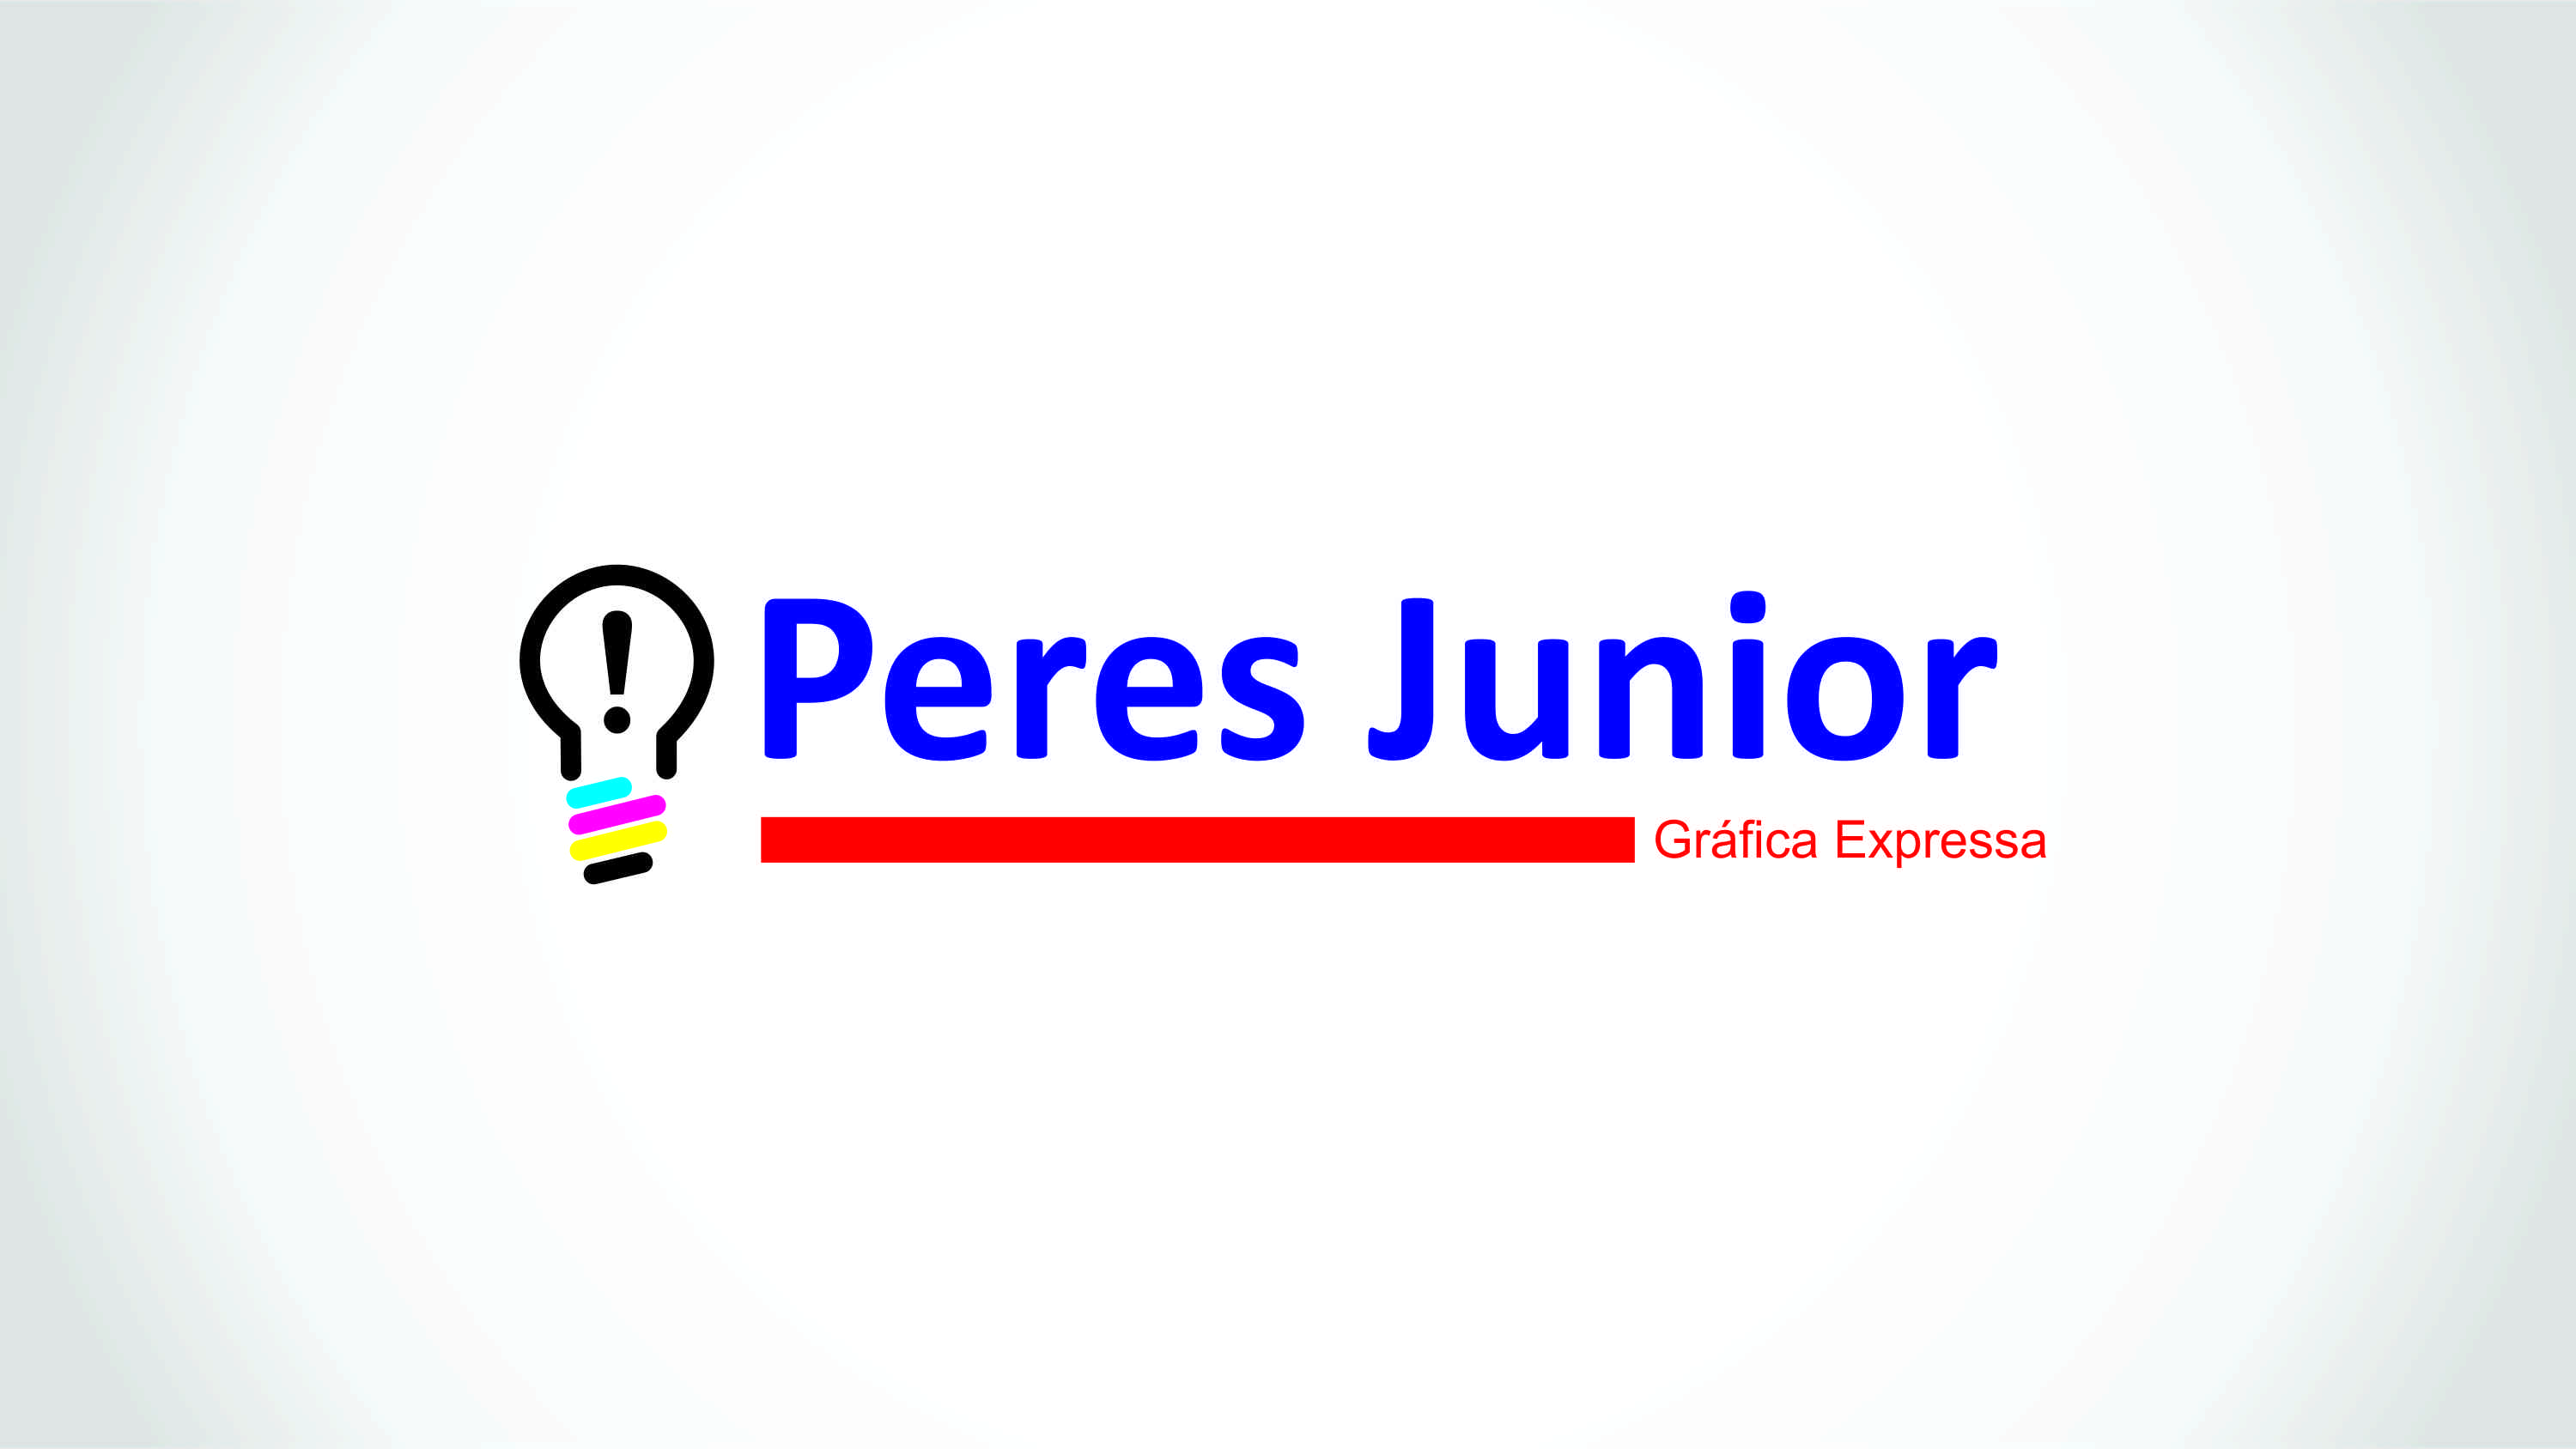 Peres Junior Gráfica Expressa